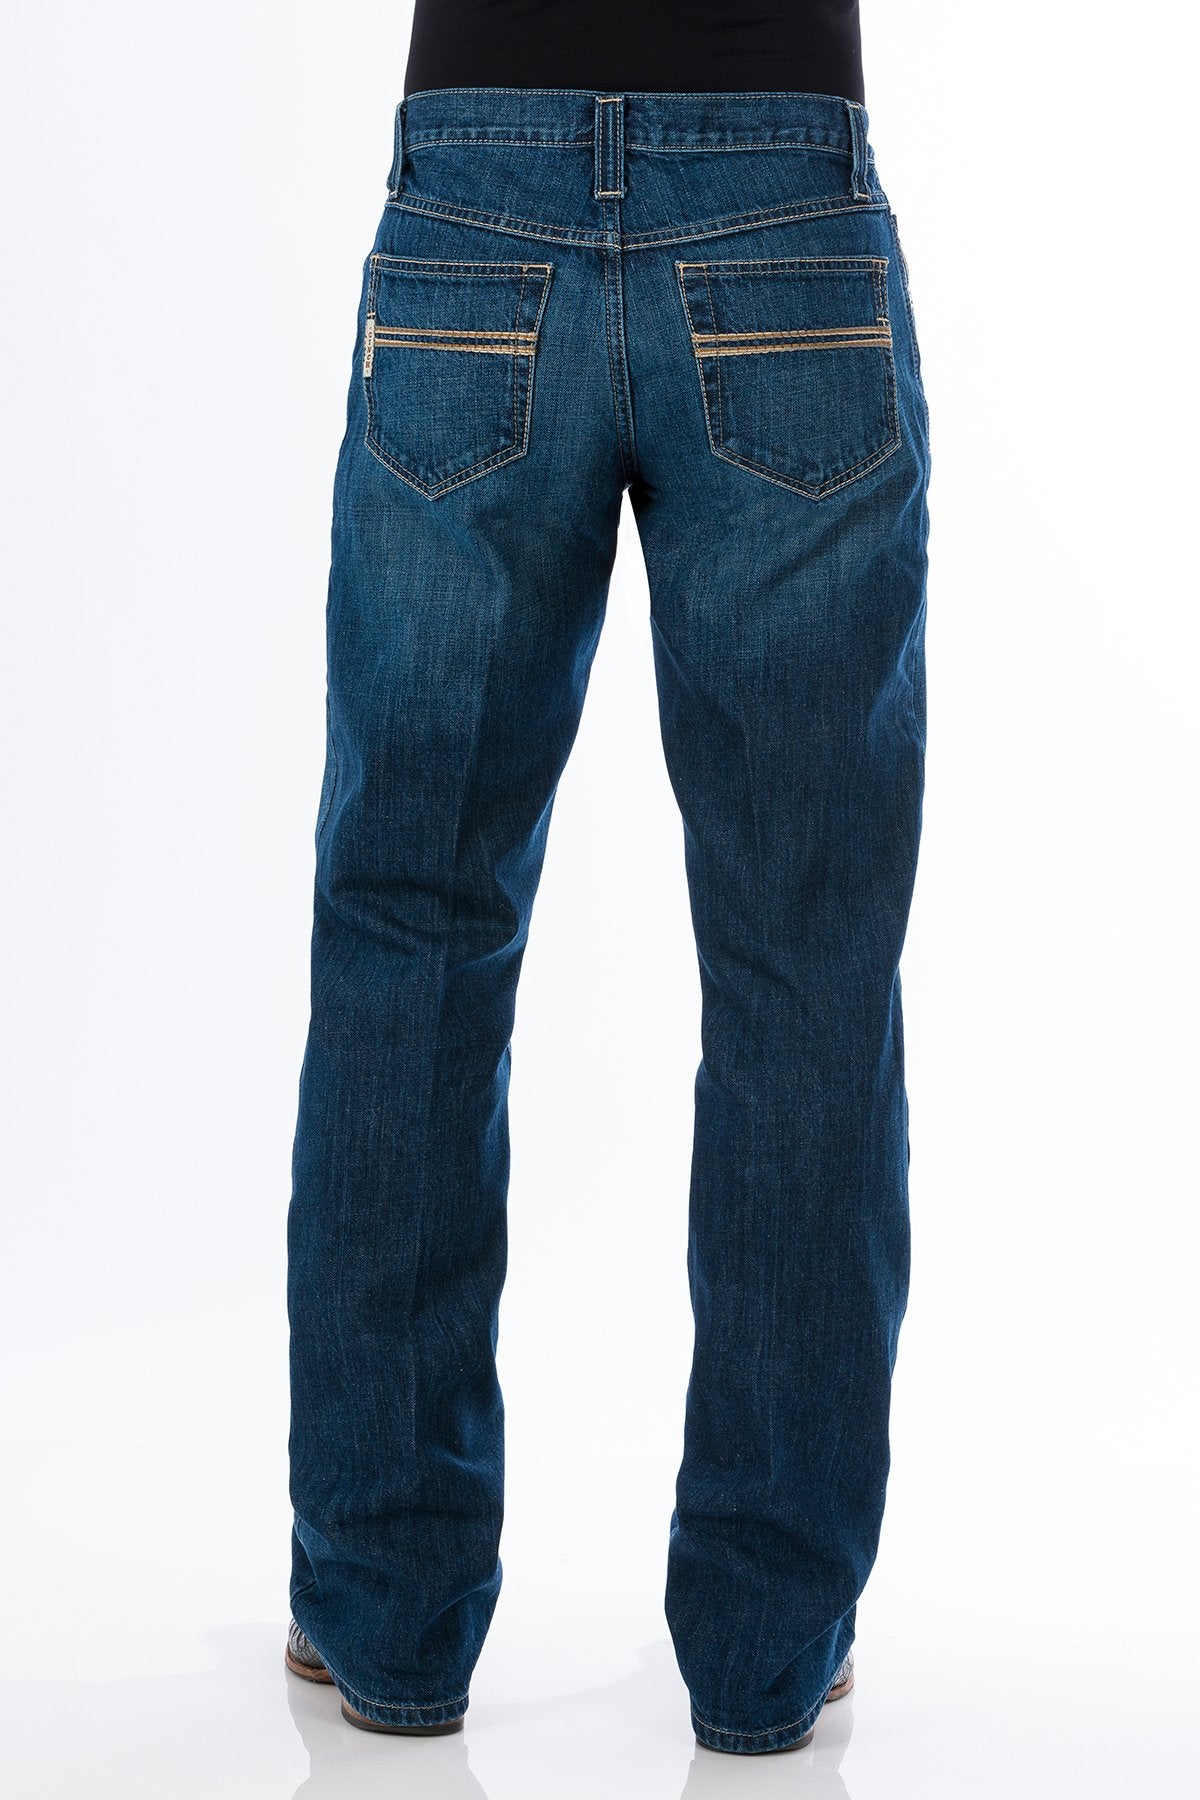 Men's Cinch Carter 2.0 Jeans